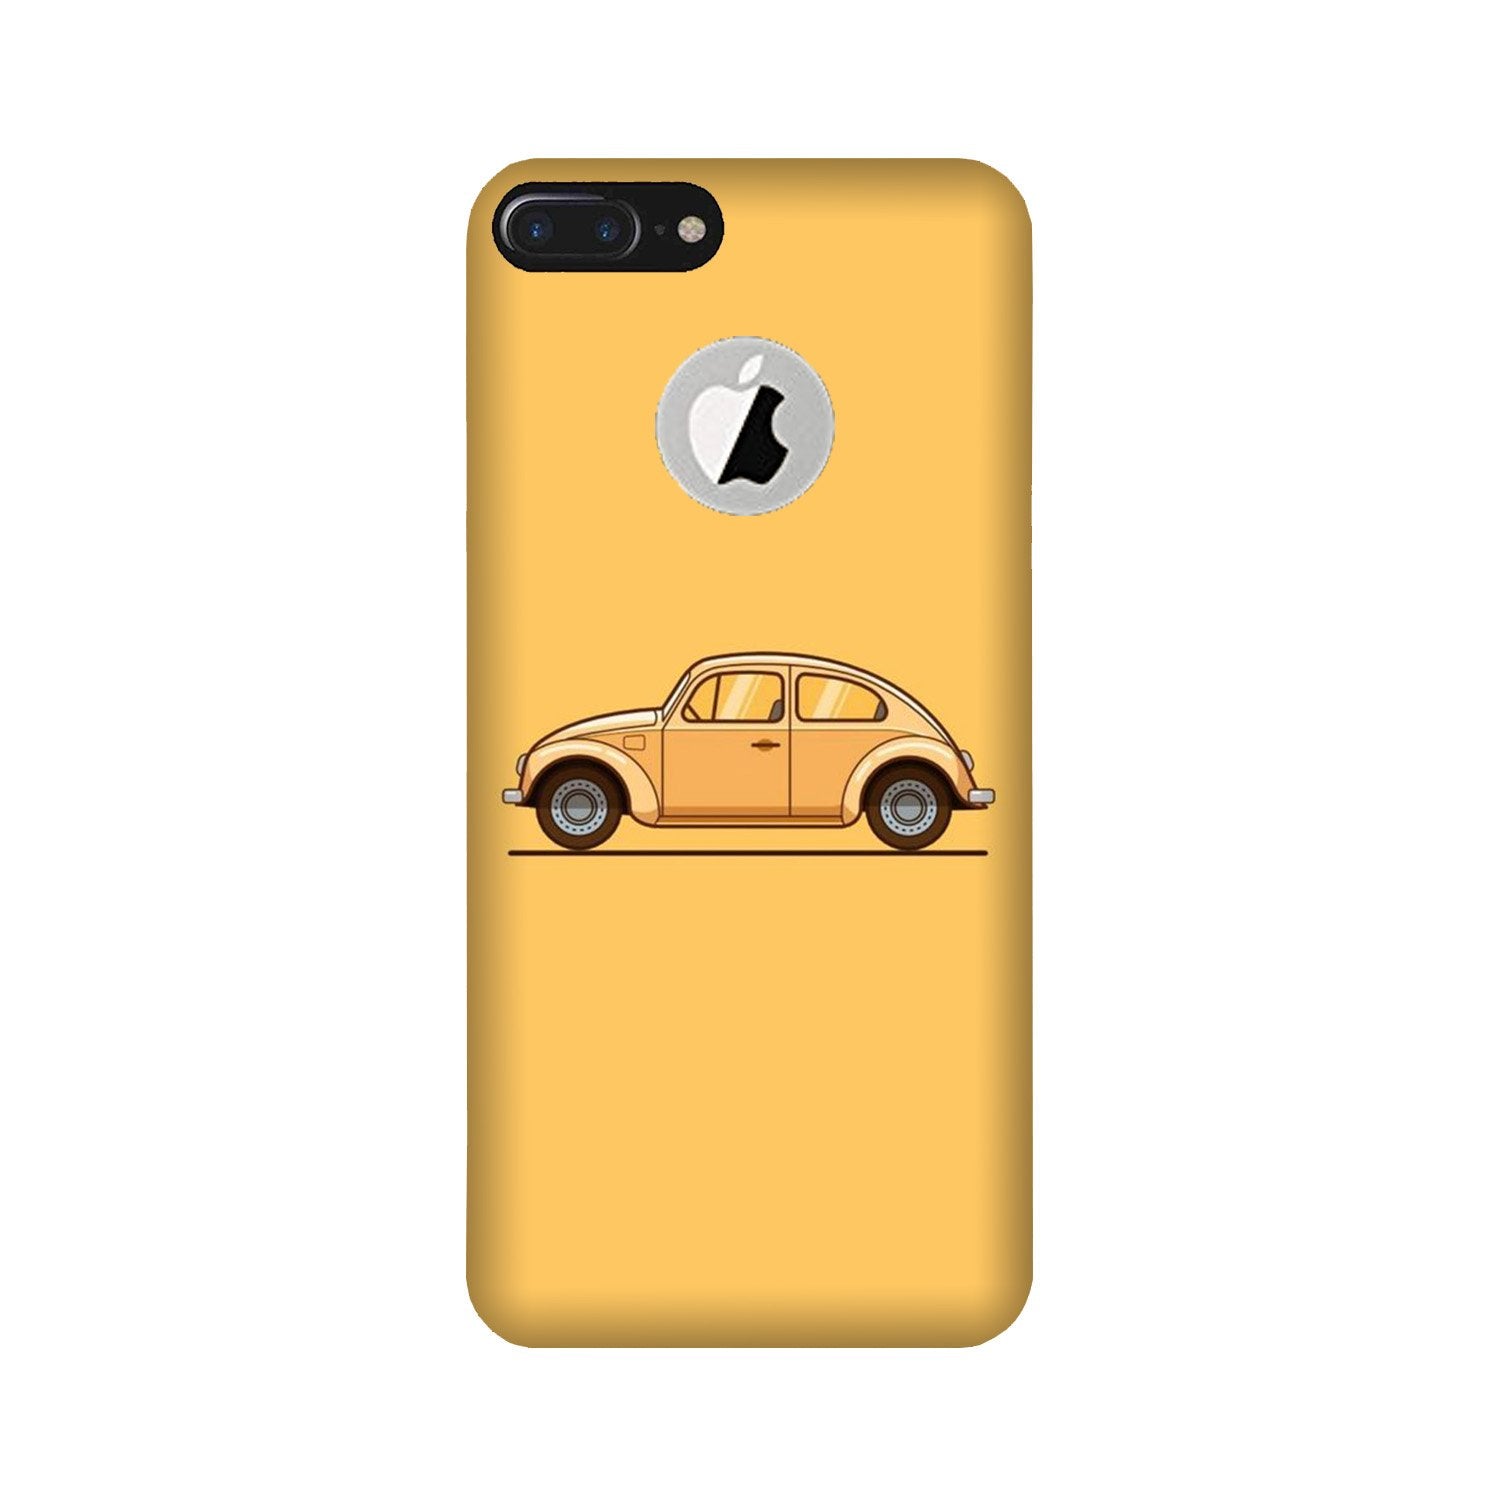 Vintage Car Case for iPhone 7 Plus logo cut (Design No. 262)